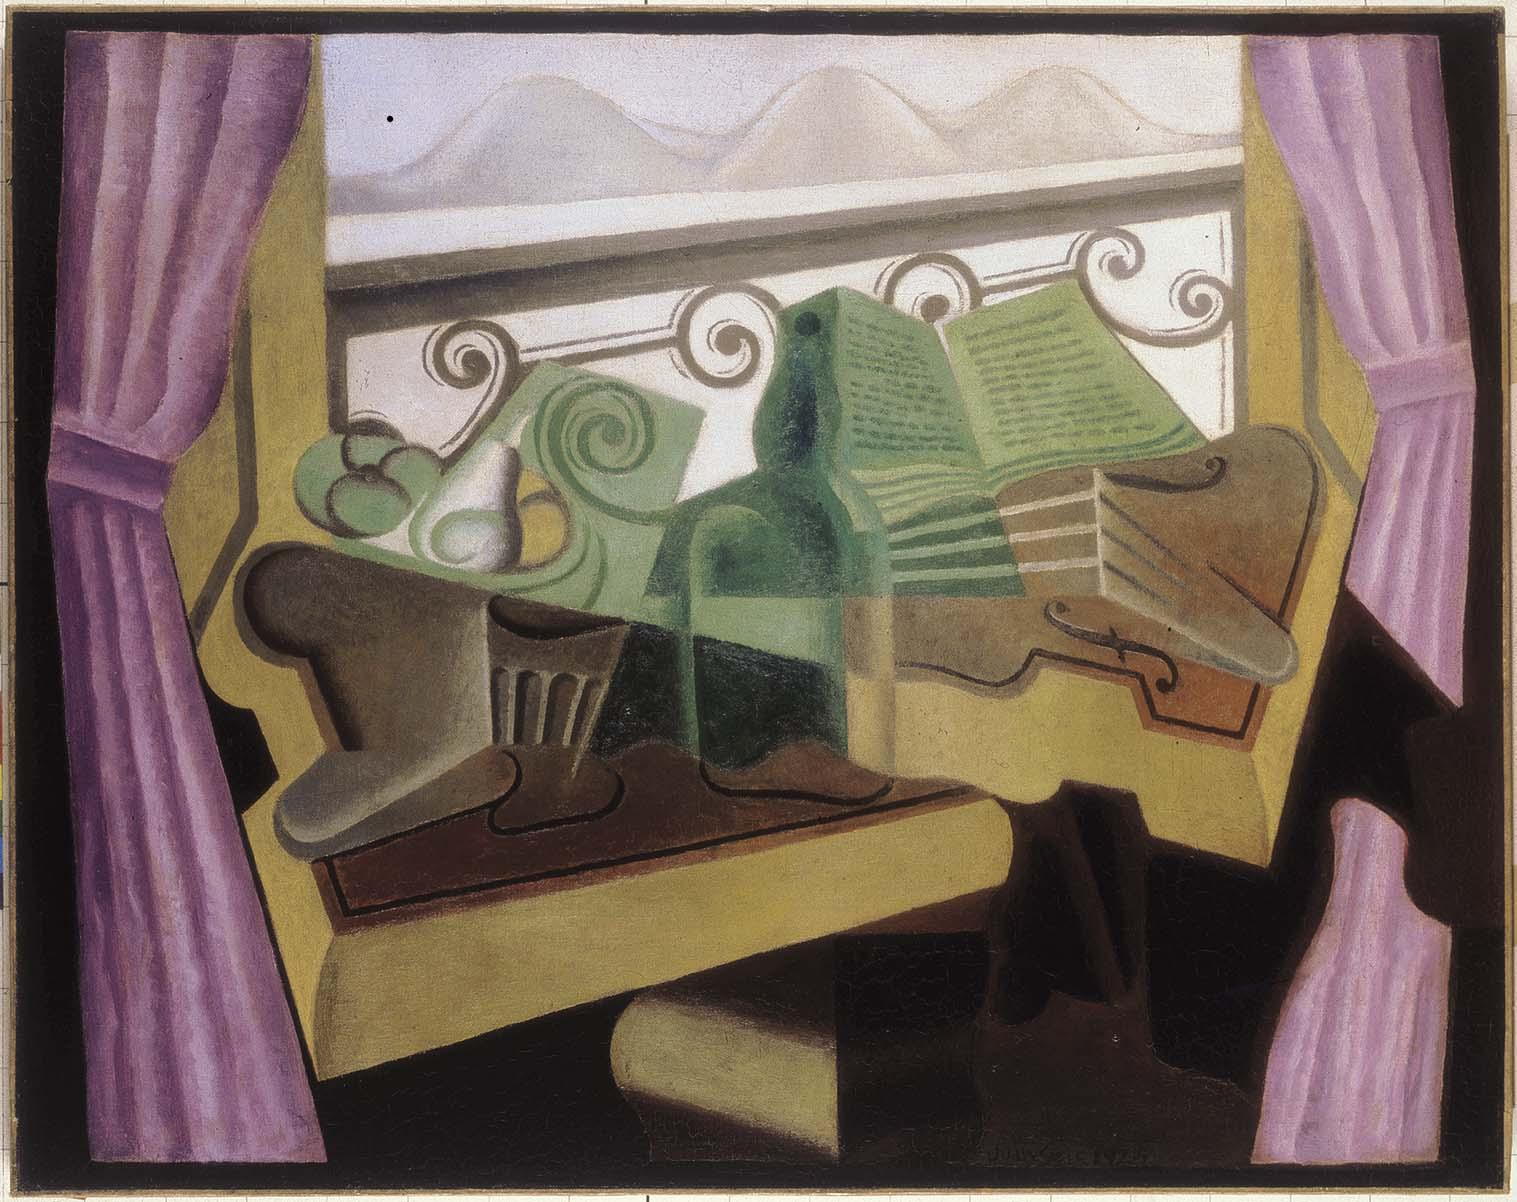 La fenêtre aux collines; Gris, Juan, 1923 ©ColecciónTelefónica